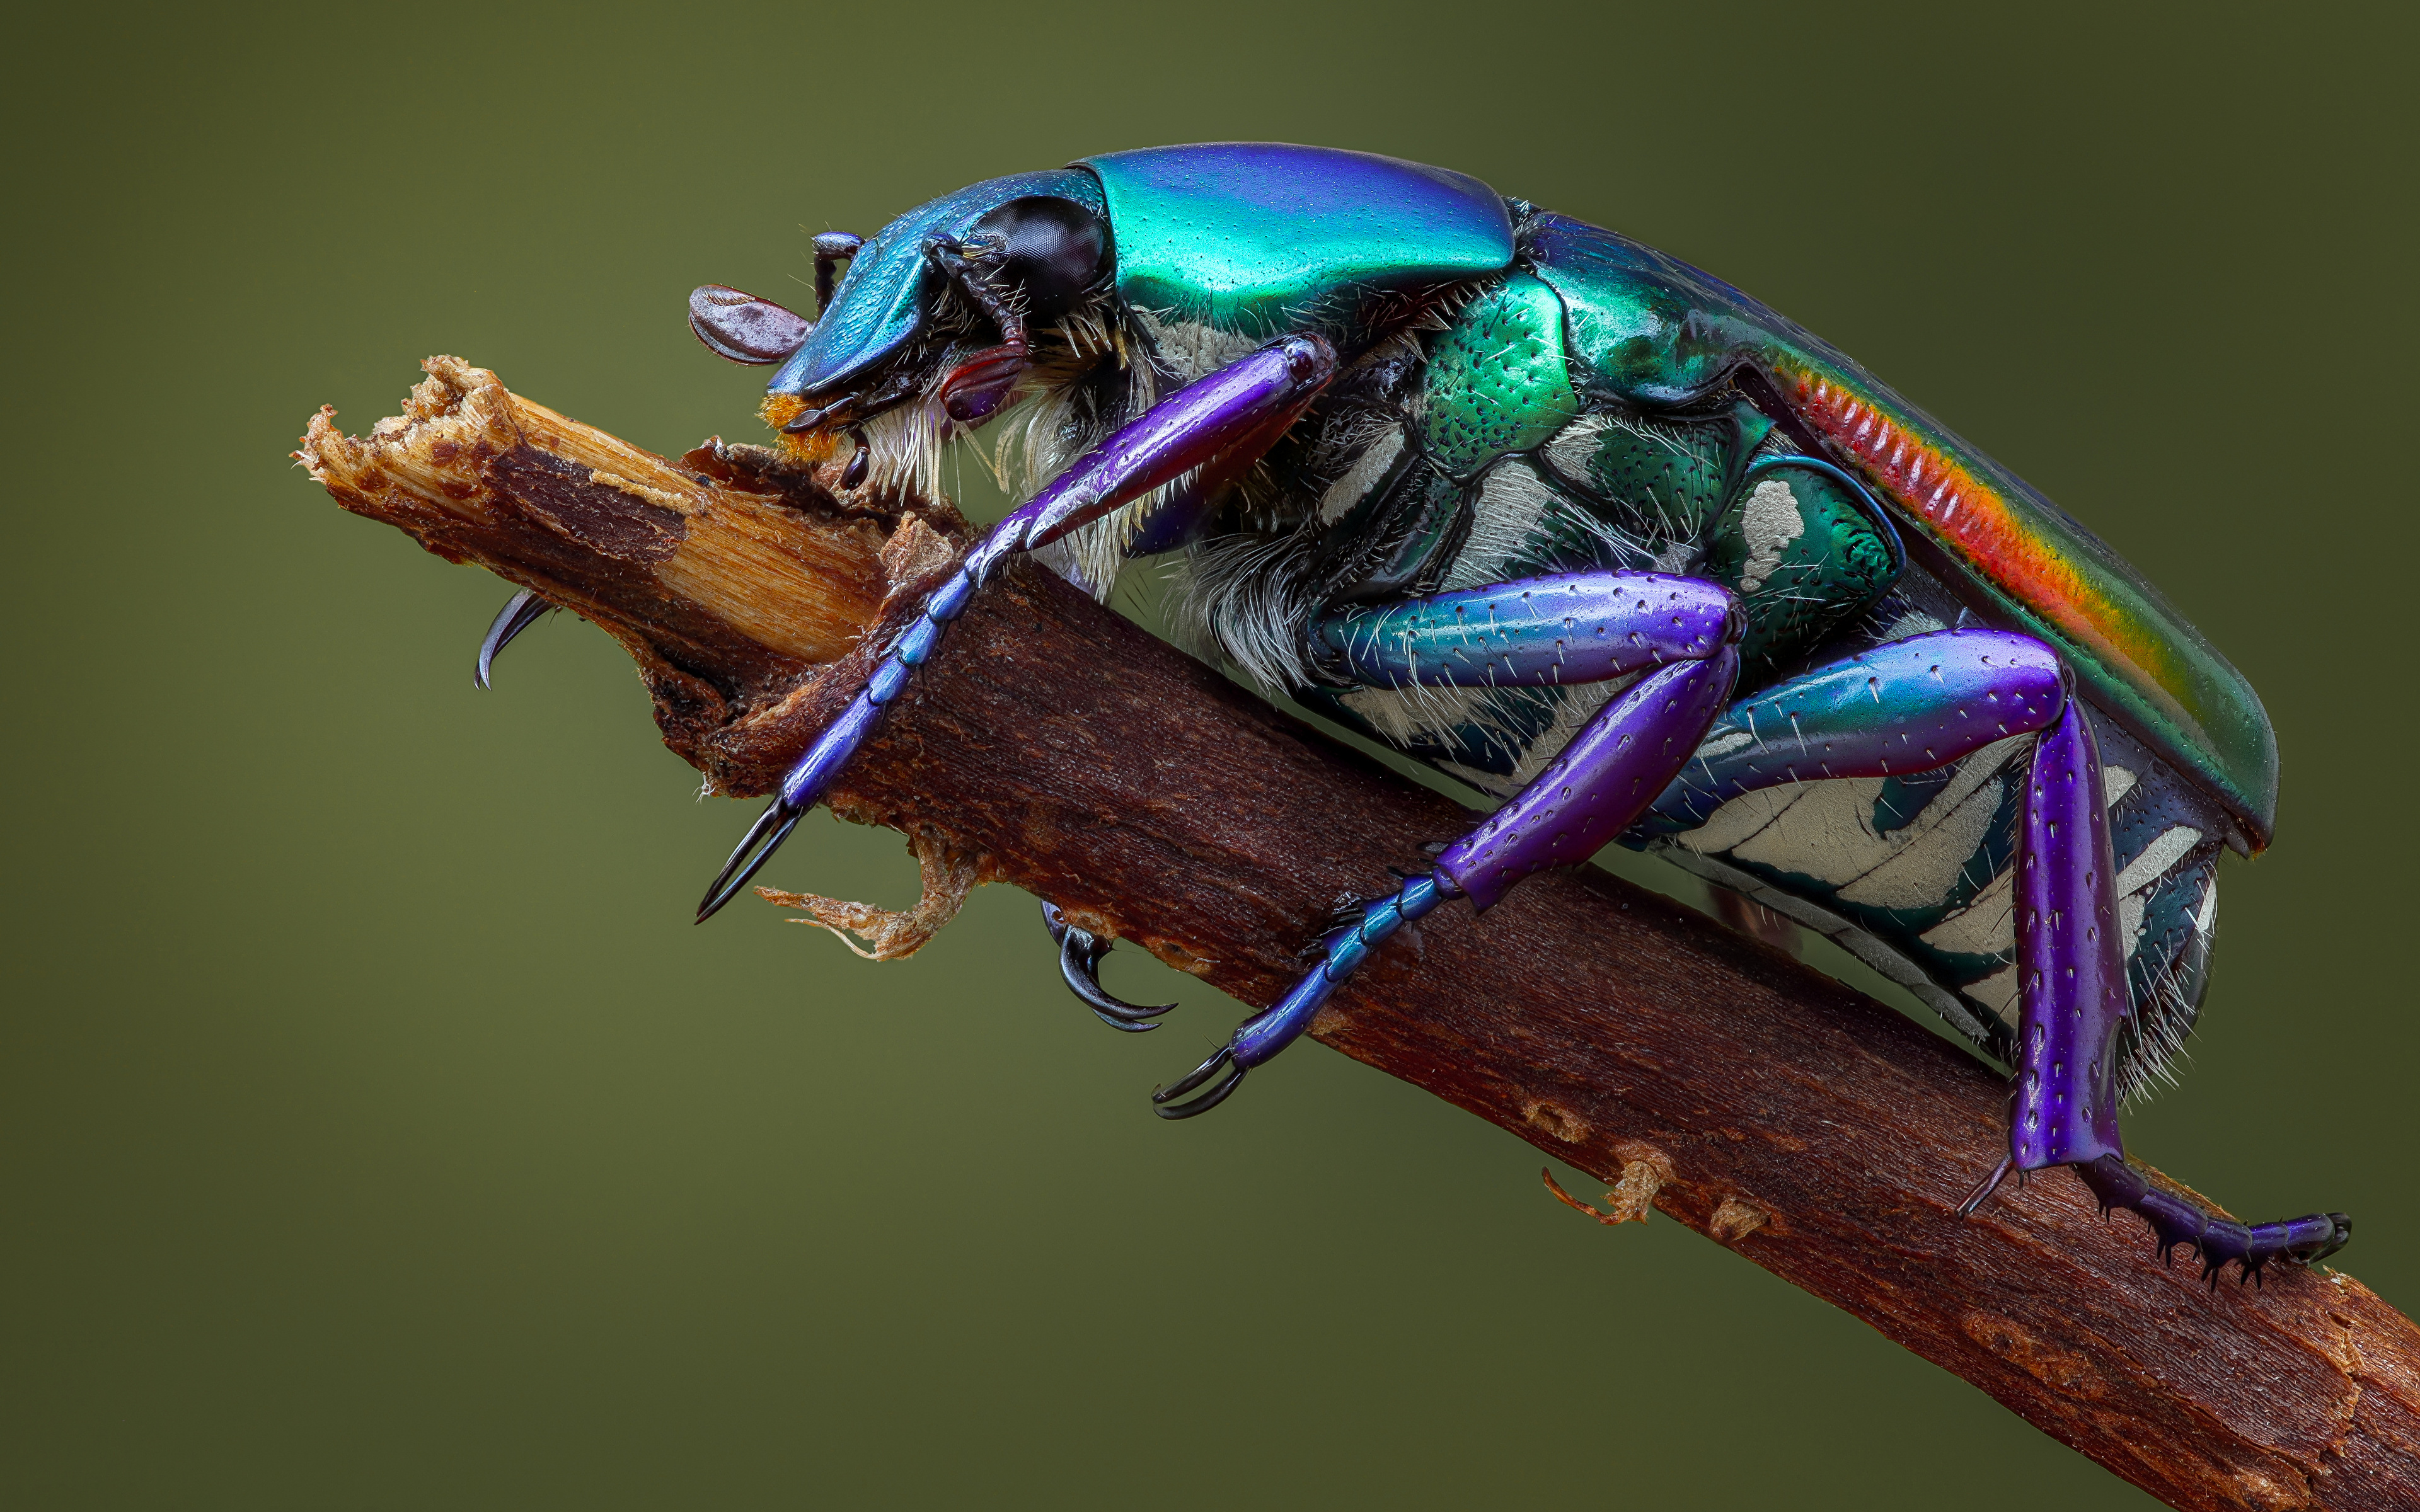 Bilder von Käfer Insekten pygora sanguineomarginata Tiere Großansicht 3840x2400 hautnah ein Tier Nahaufnahme